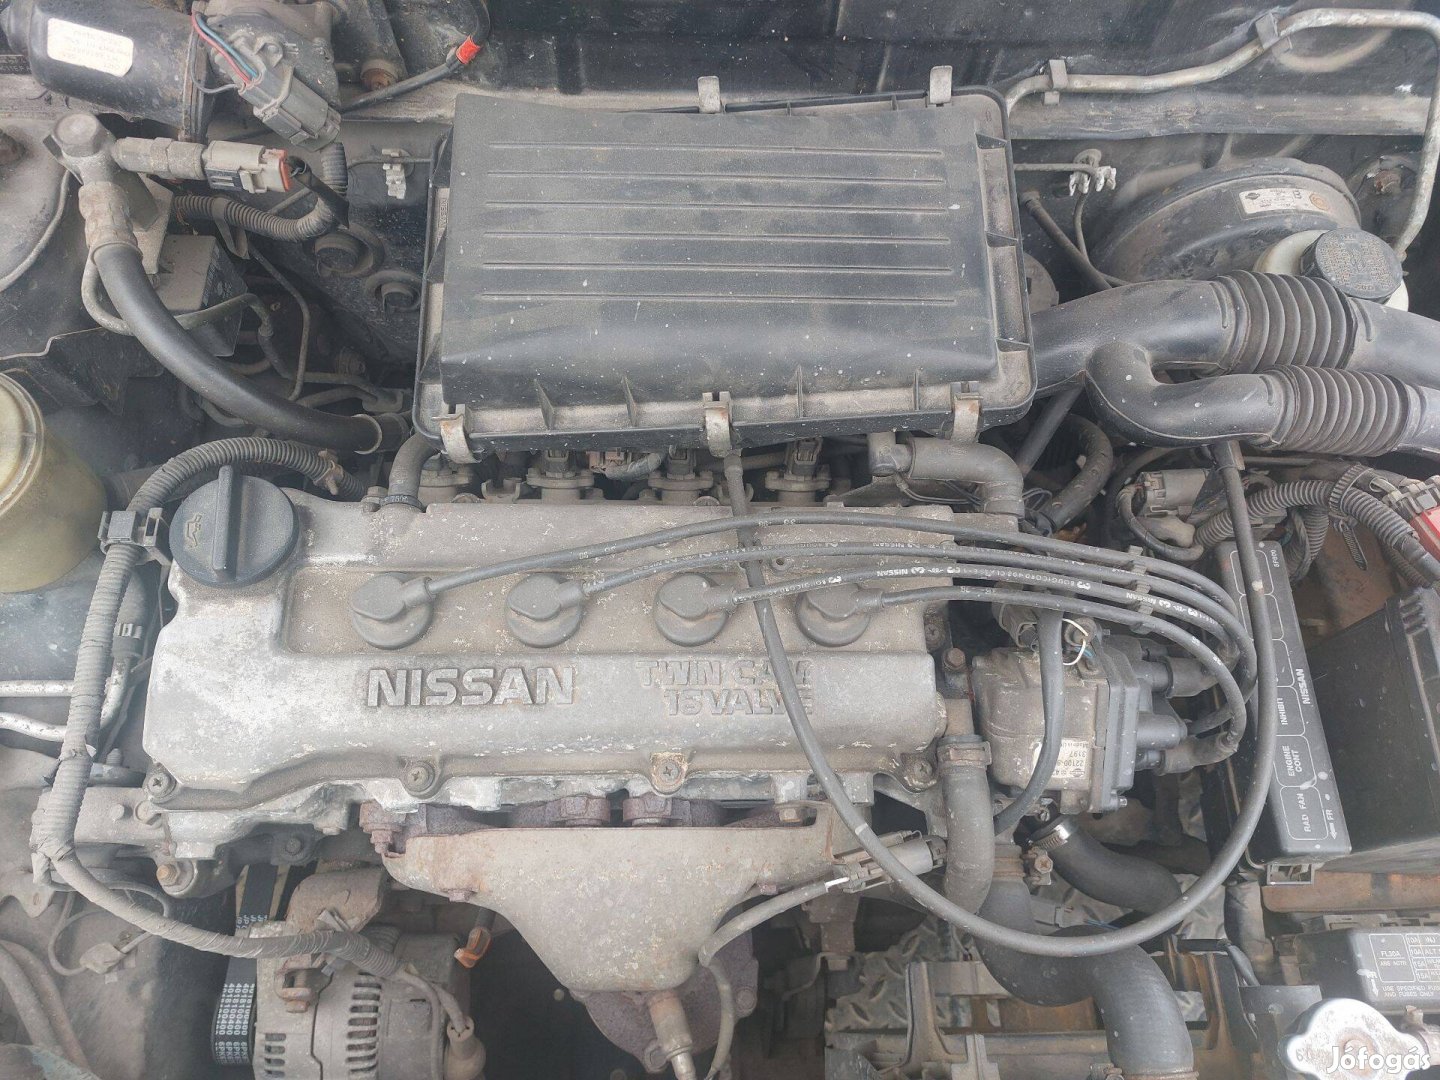 Nissan Micra K11 1.0 k omplett motor CG10